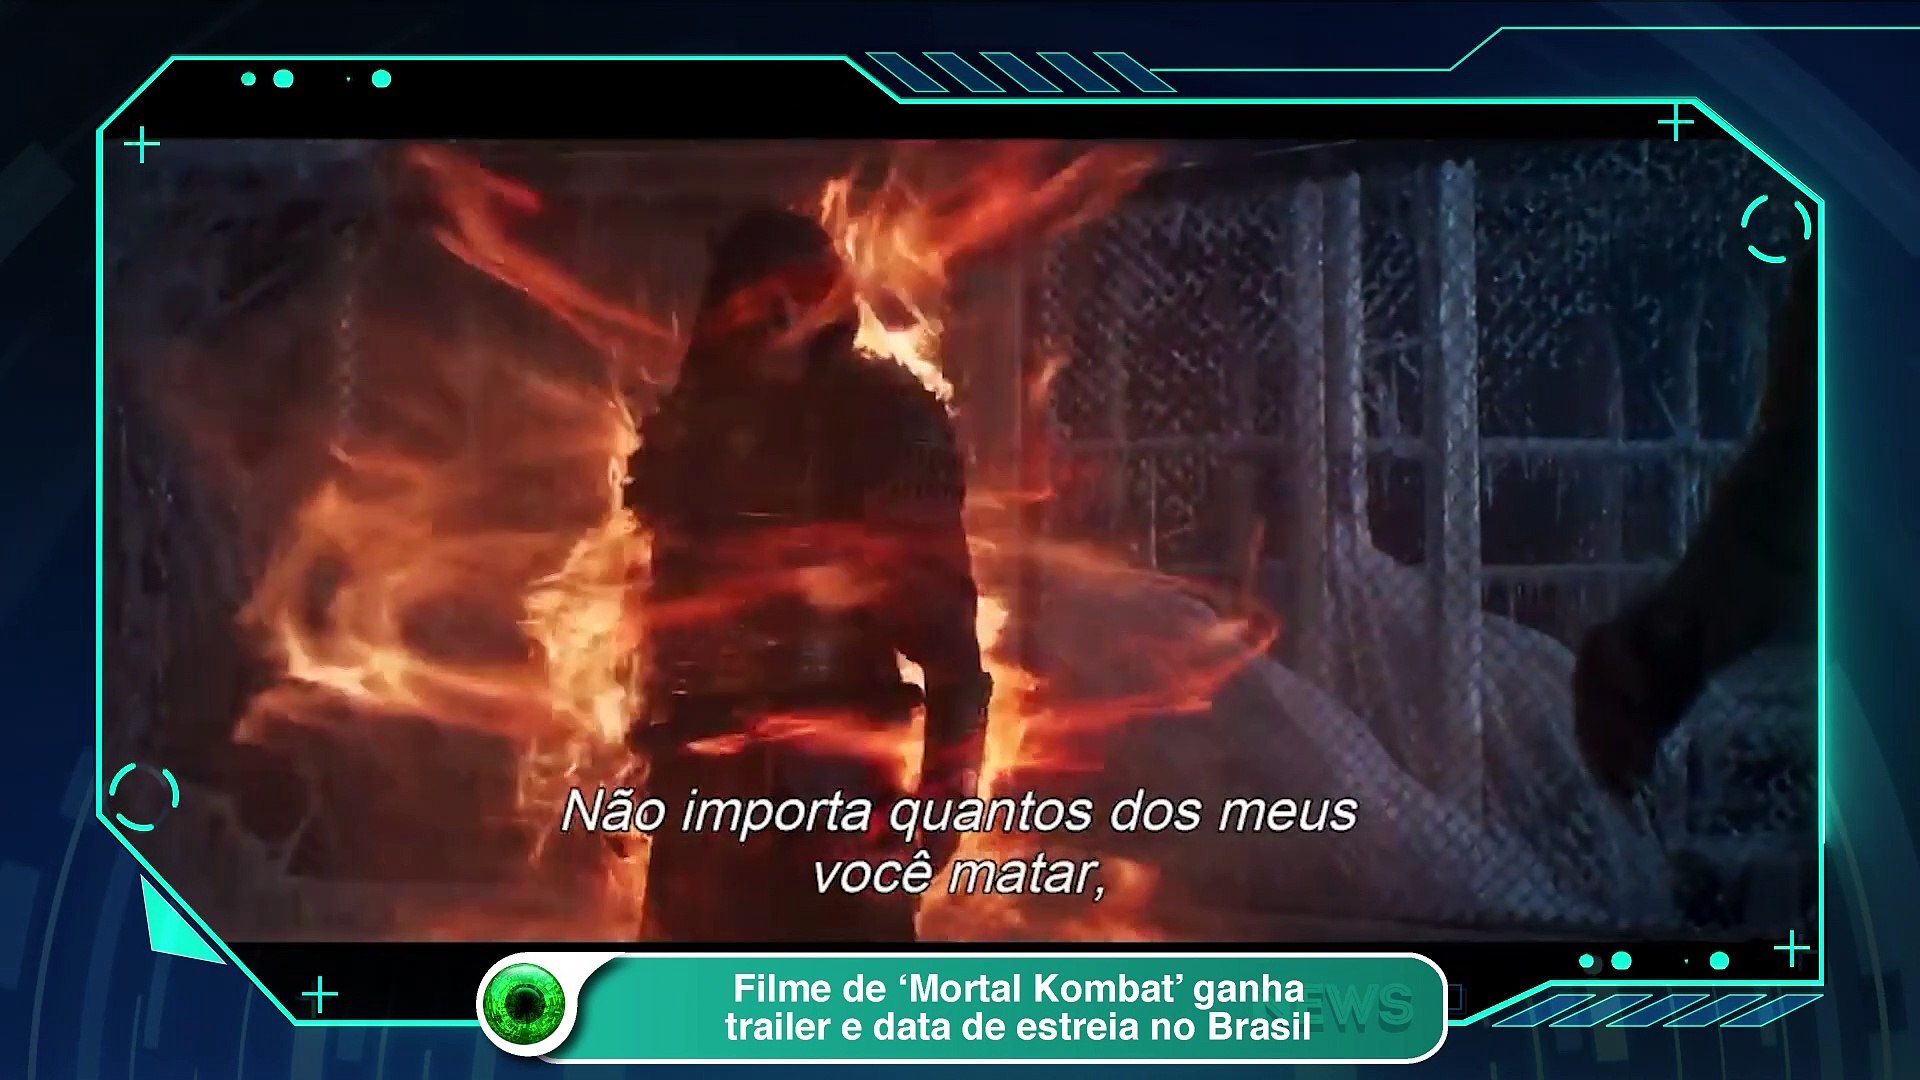 Mortal Kombat: Elenco do filme, data de estreia e mais